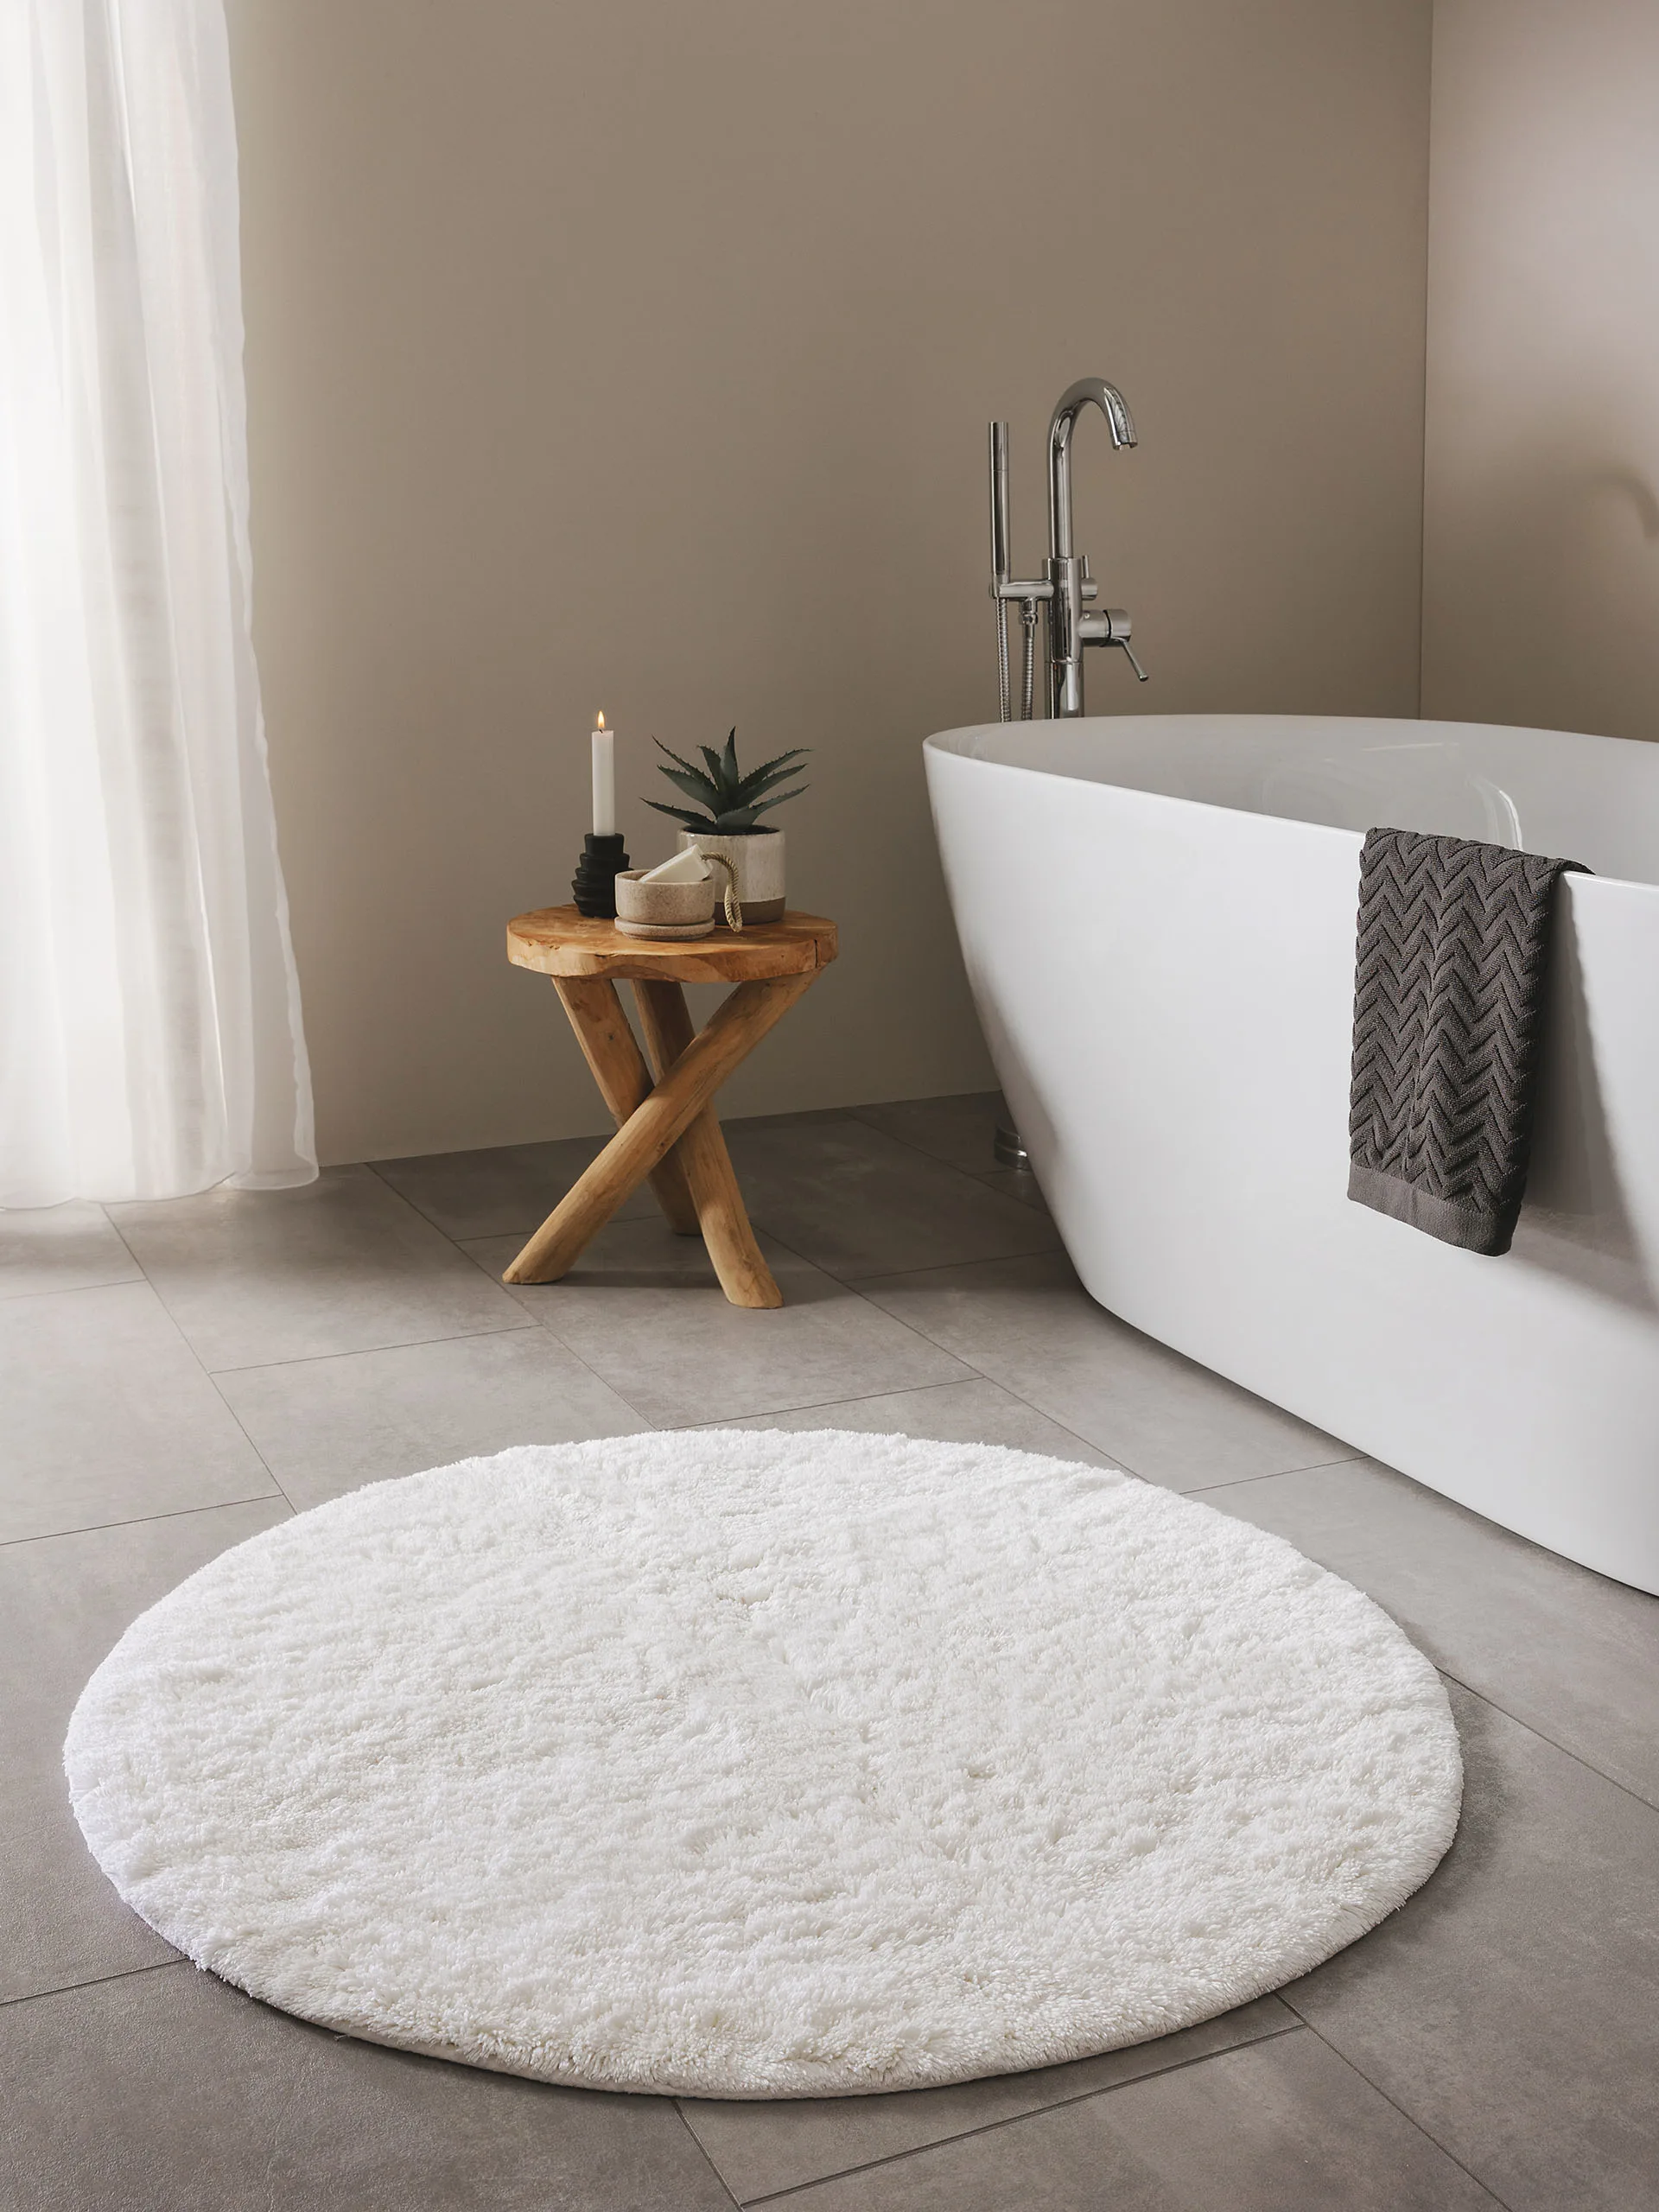 Bad dekoriert mit einem rustikalen Holztisch neben einer weißen, freistehenden Badewanne, vor der ein runder, weißer Badteppich liegt